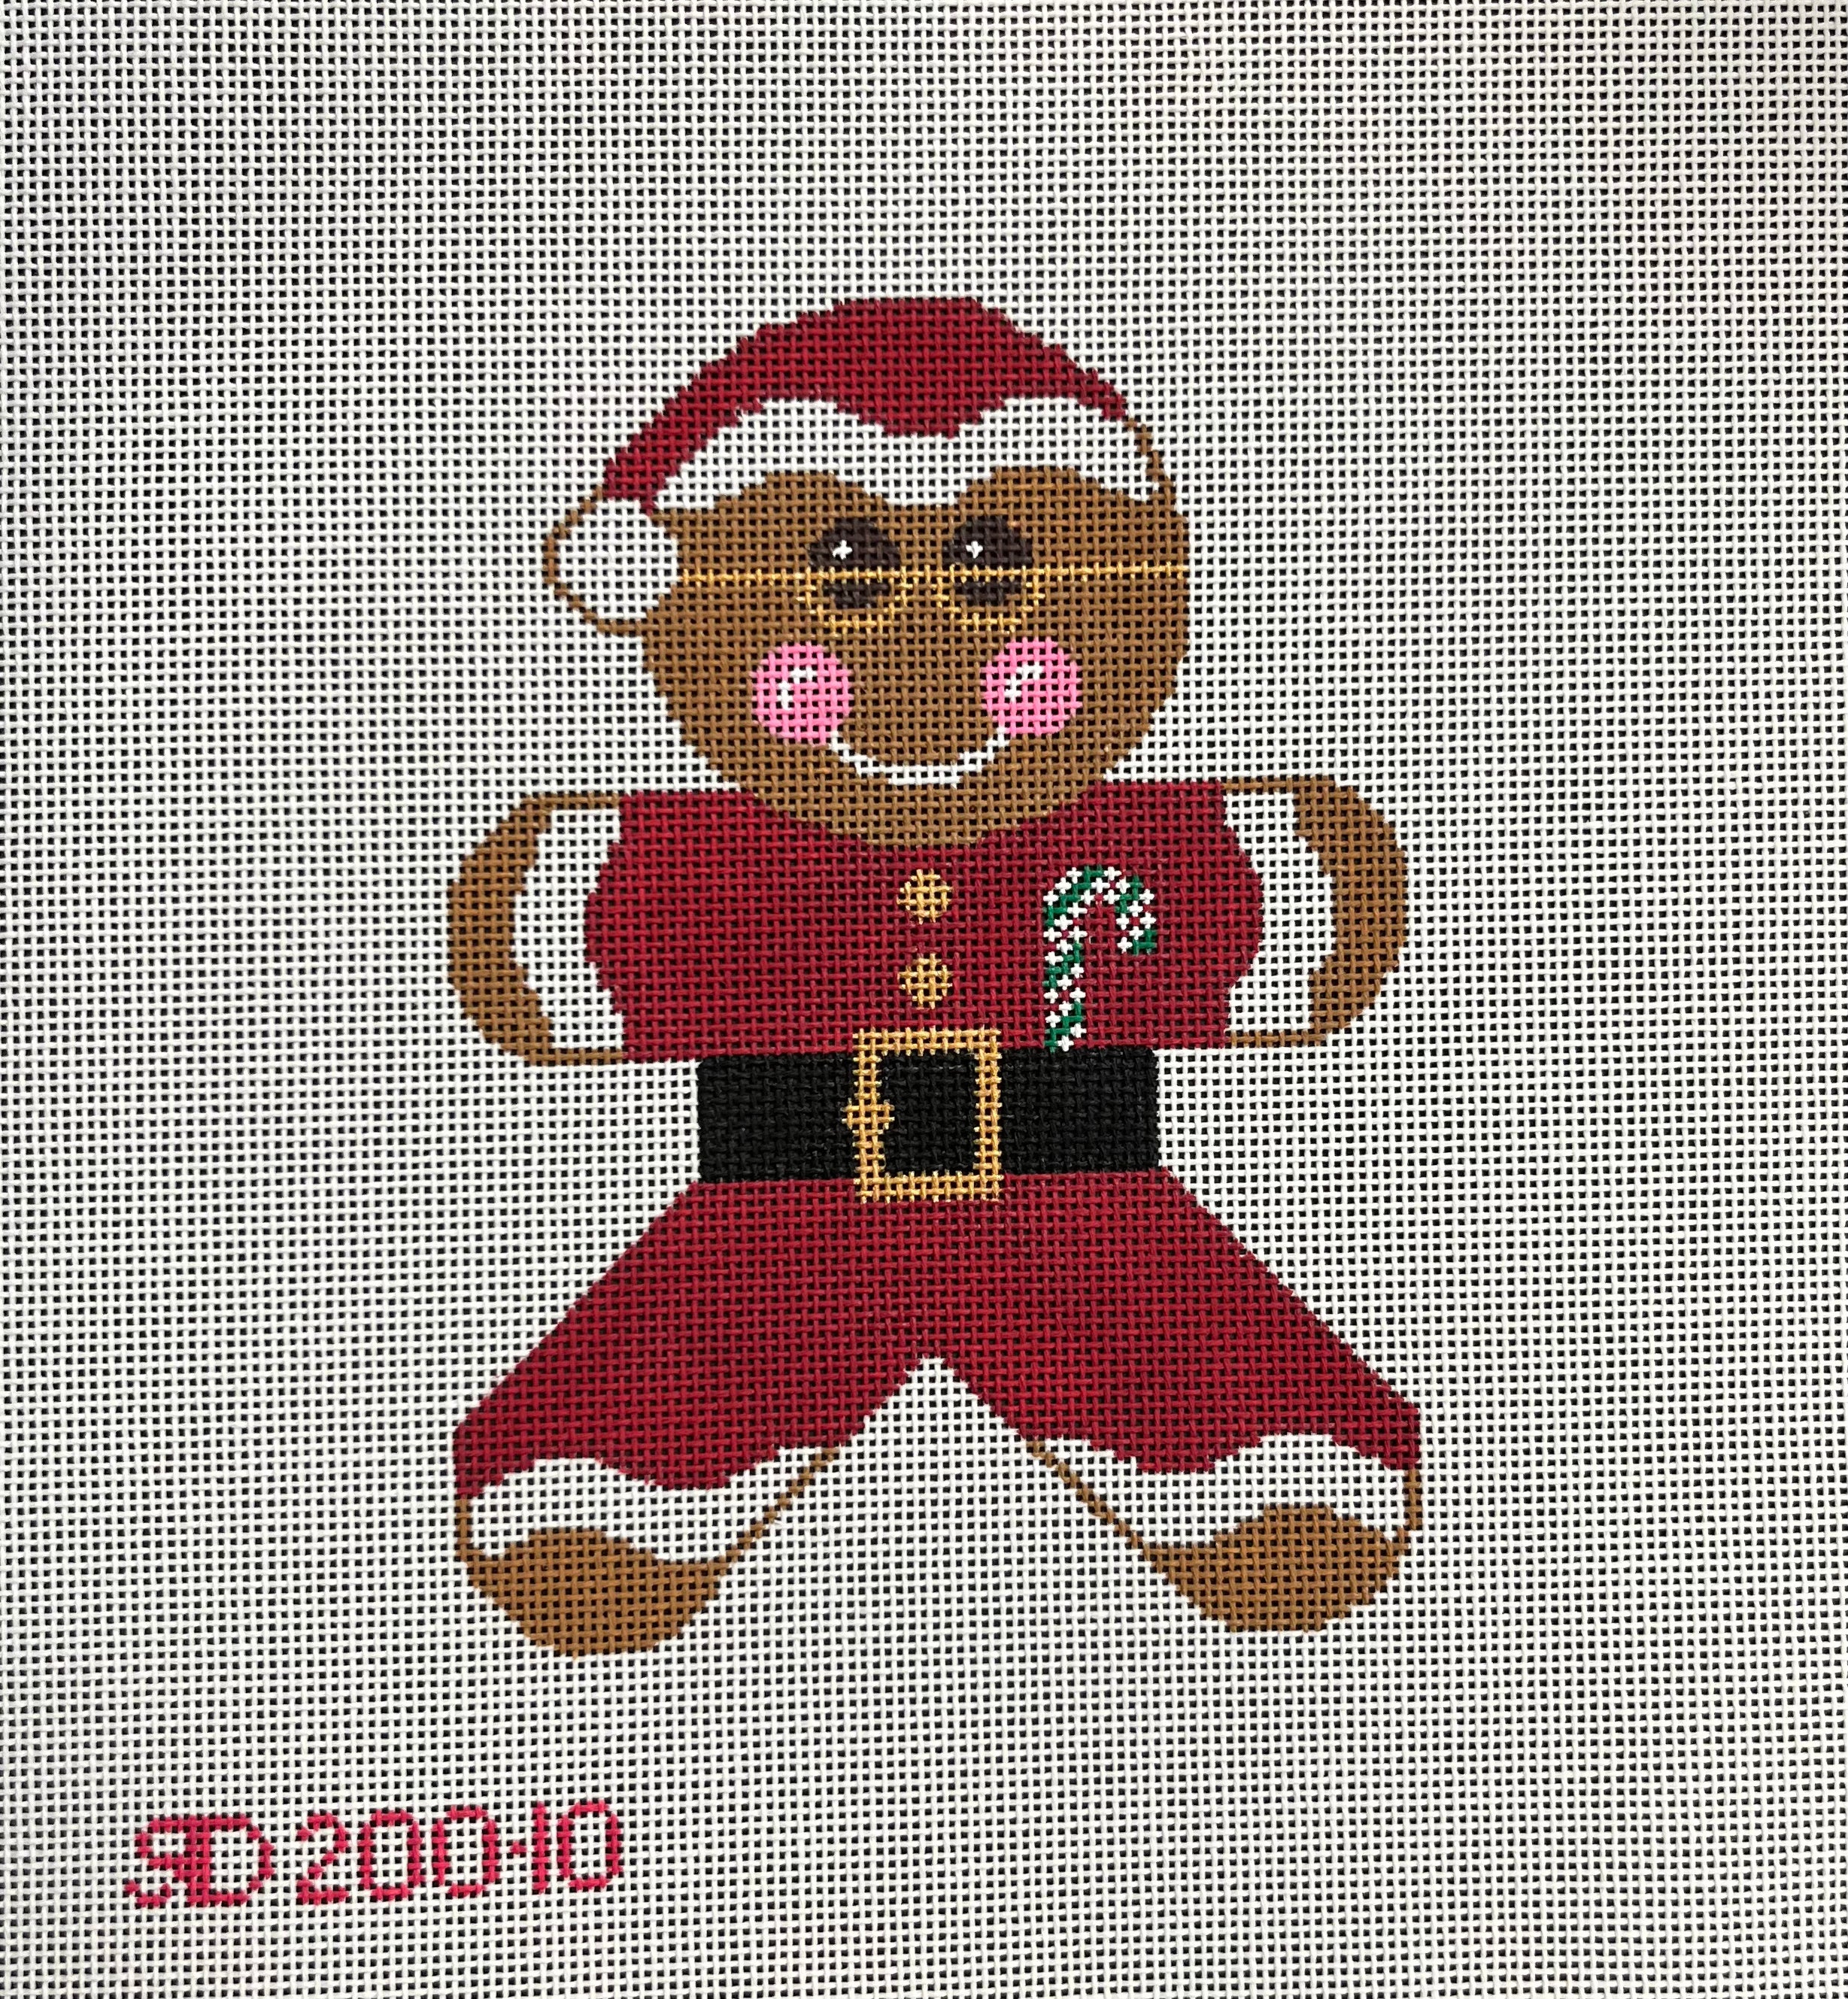 RD 200-10 - Santa Claus Gingerbread